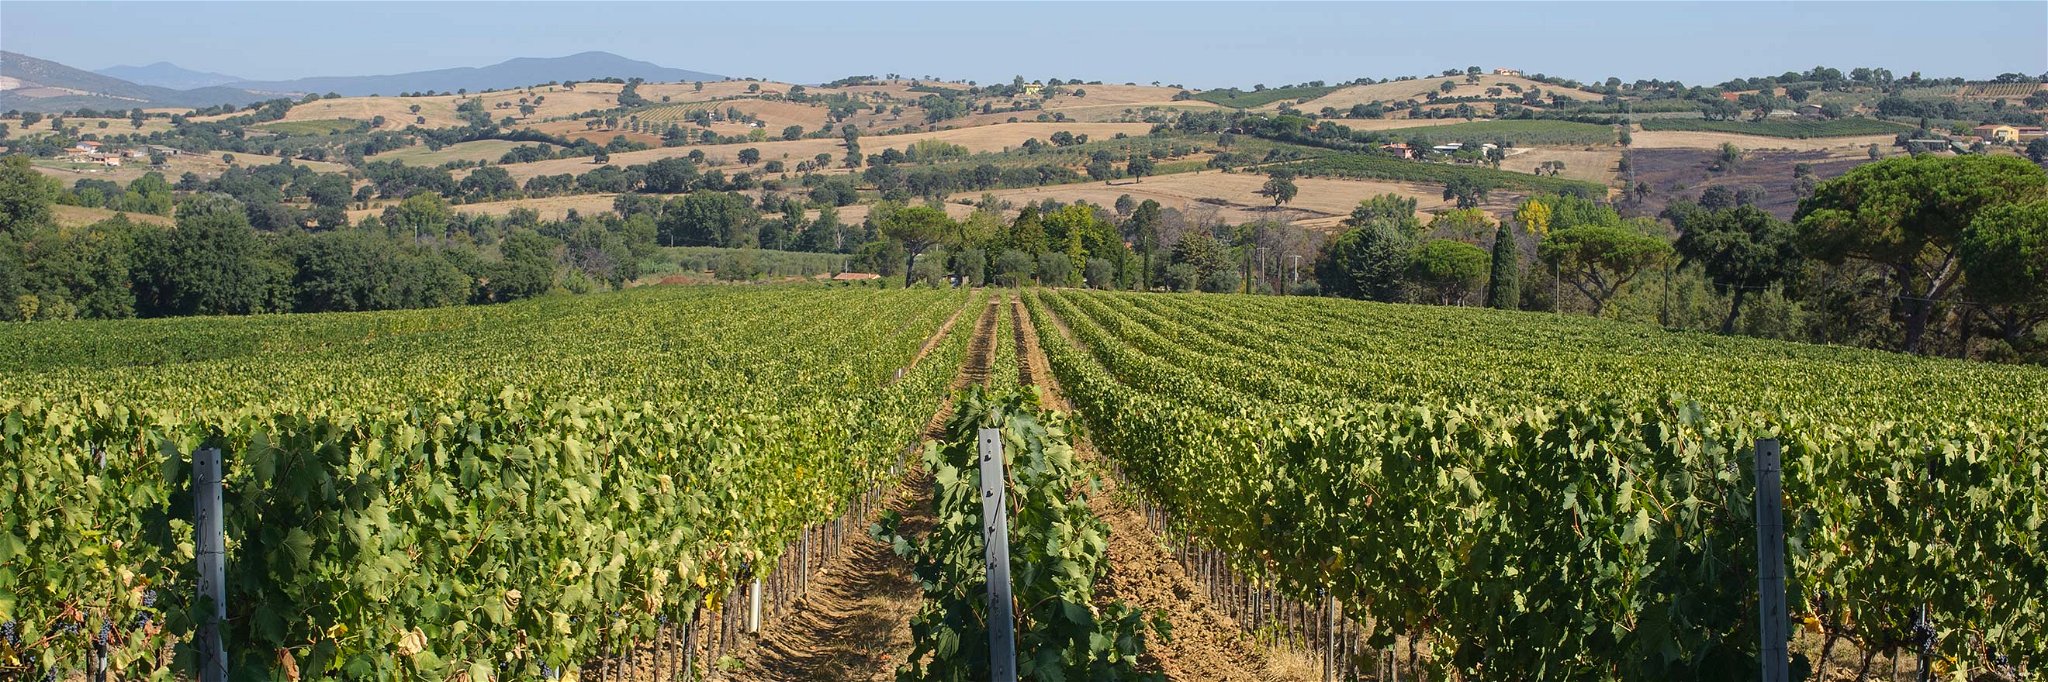 Das Weingut Valle delle Rose liegt bei Grosseto in der Maremma.